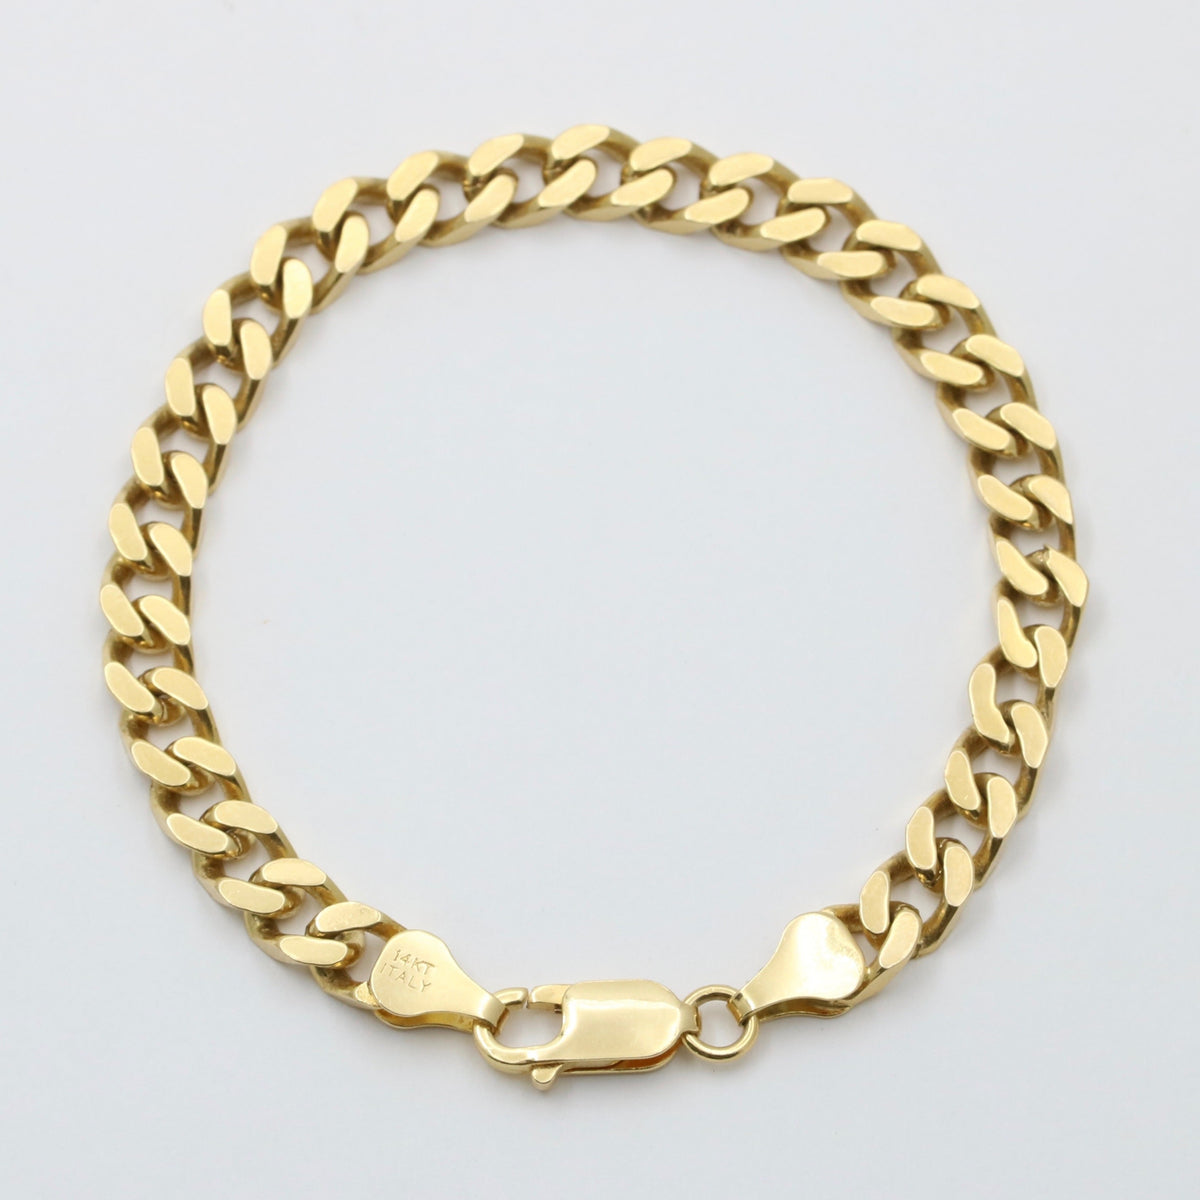 14K Gold Flat Curb Link Bracelet, 7” Long